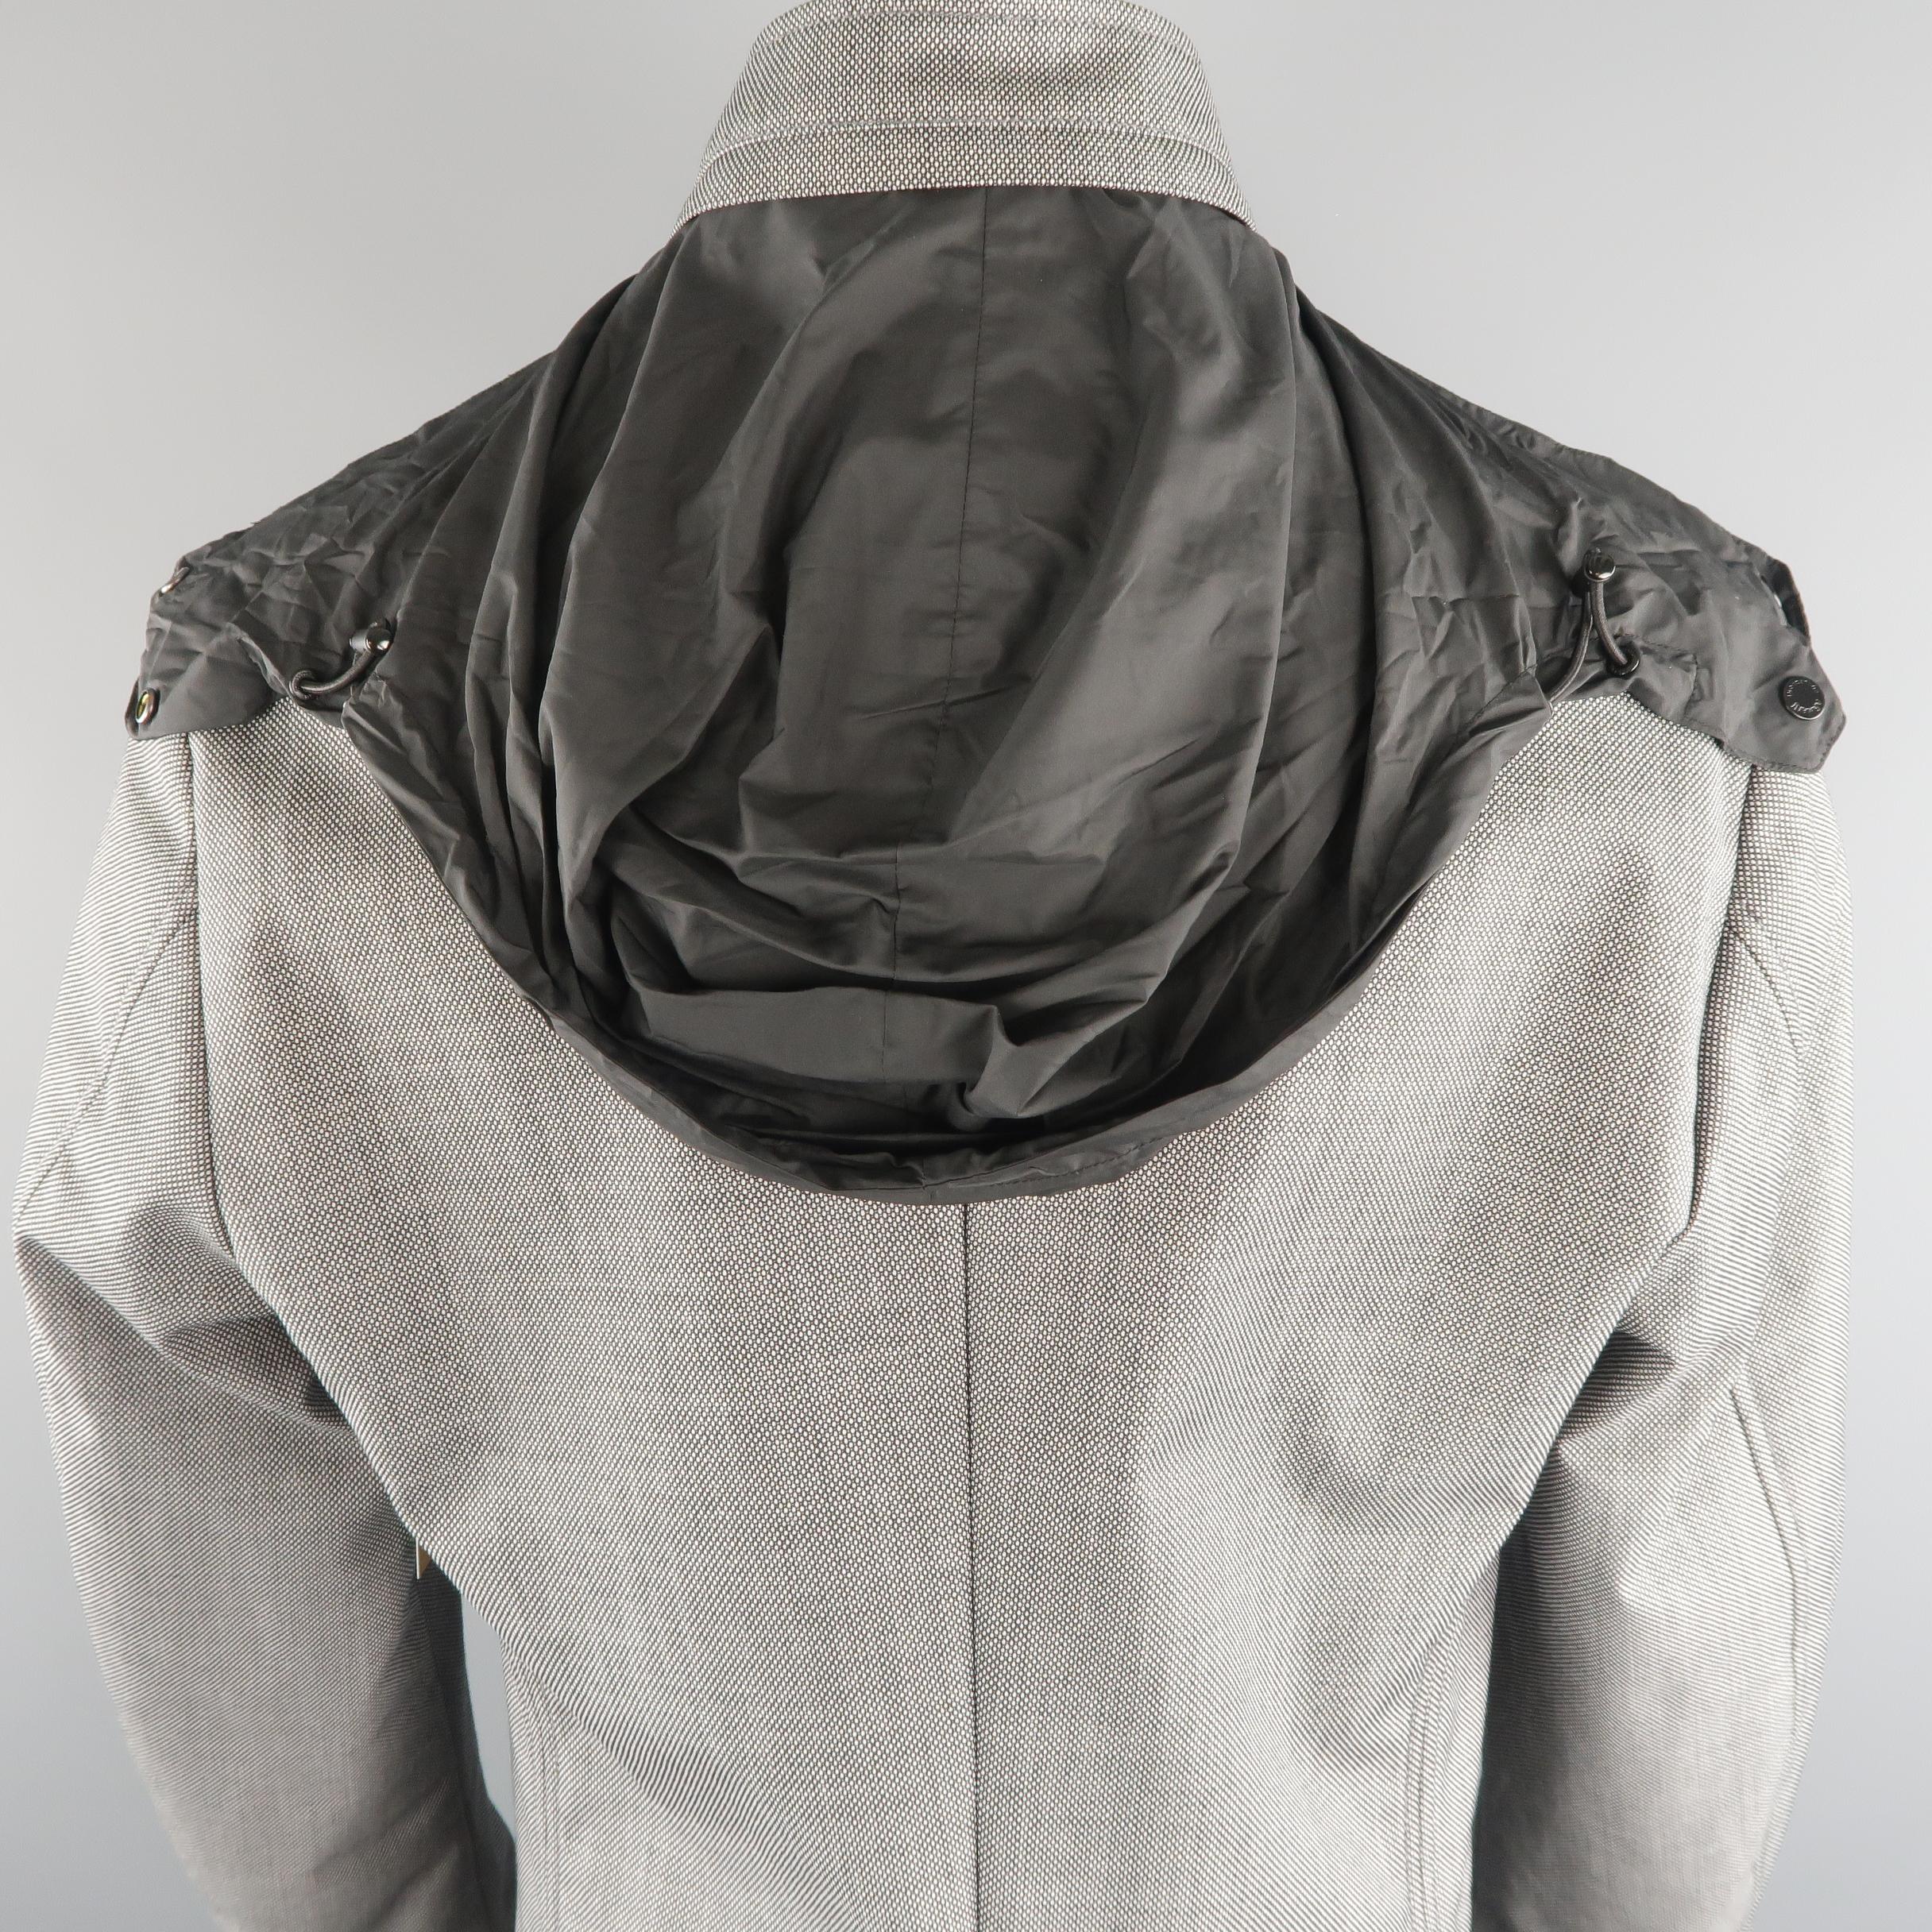 ARMANI COLLEZIONI 44 Black & White Nailhead Wool Blend Jacket 1